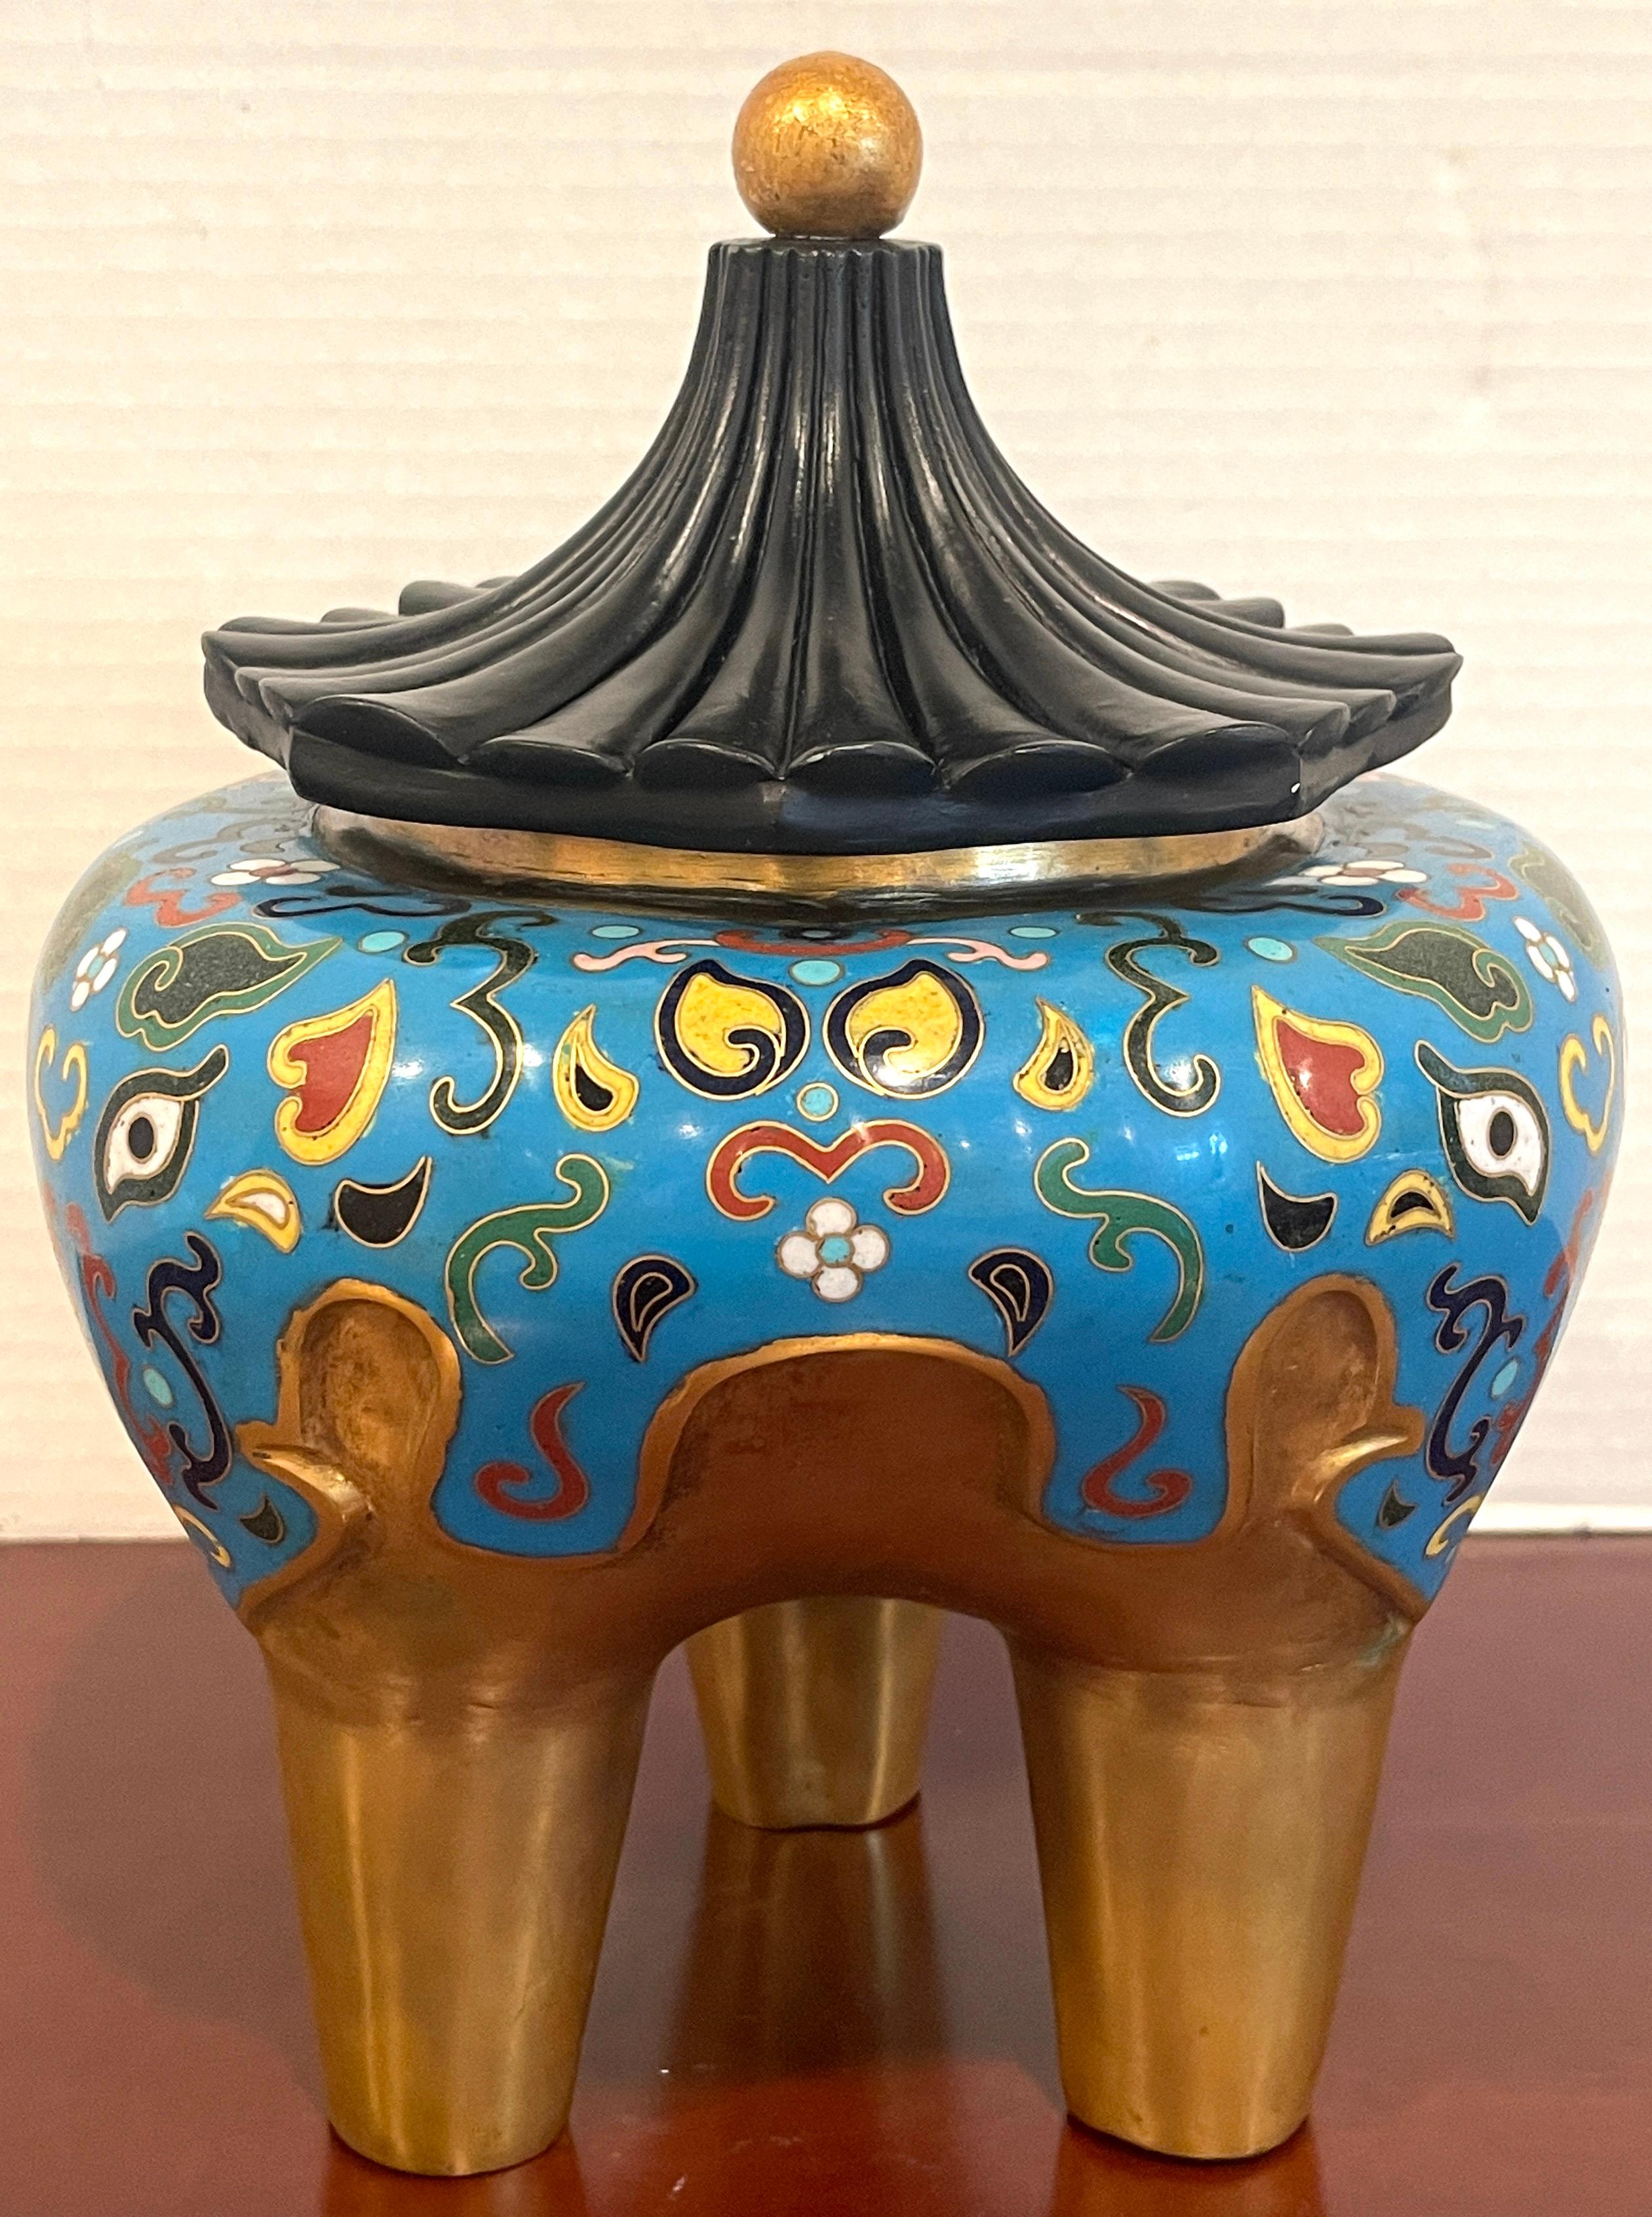 19. Jahrhundert chinesischen archaischen Stil Cloisonné & Lack Elefantenmotiv Zensor 
Mit zugehörigem späterem Pagodendeckel aus Lack und Bronze, der auf einem dreibeinigen Zensor aus vergoldeter Bronze mit Cloisonné-Elefantenmotiv ruht.